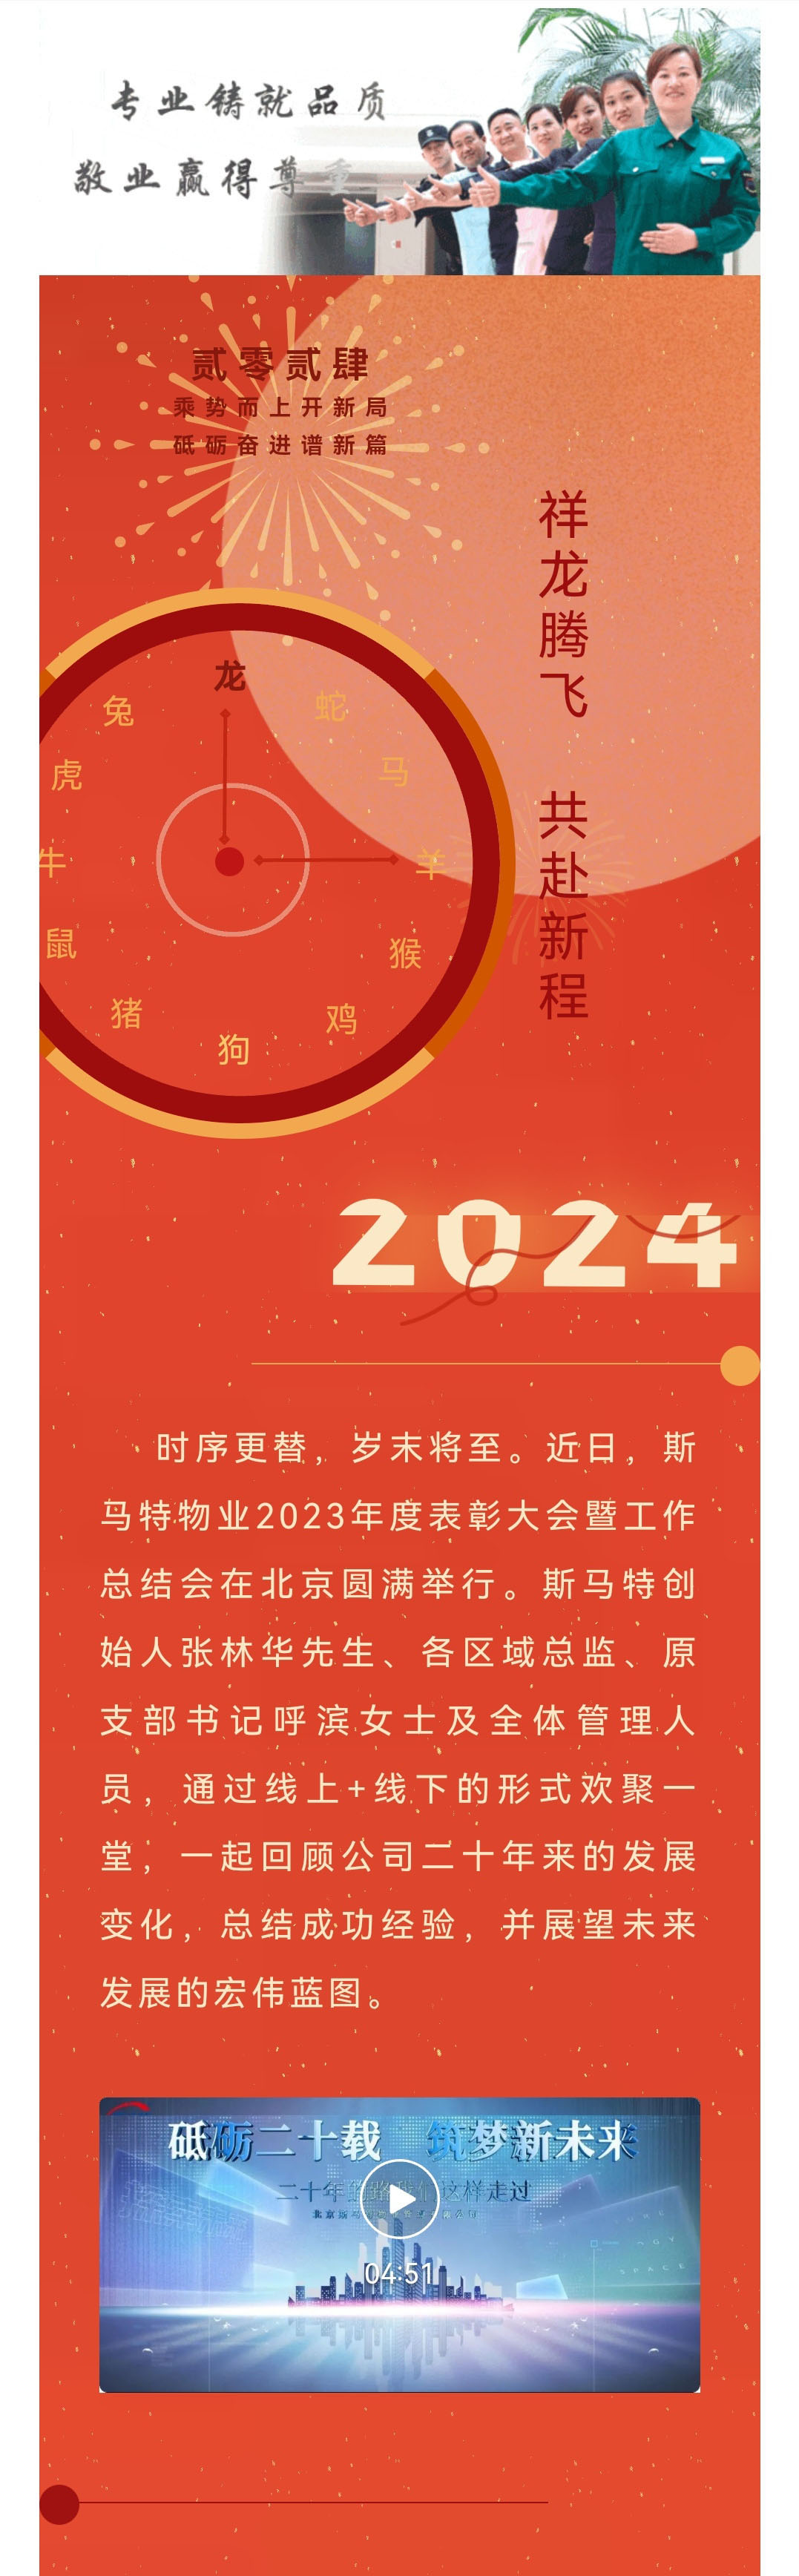 看龙翔万里  启盛世华章——斯马特物业2023年度表彰大会暨工作总结会